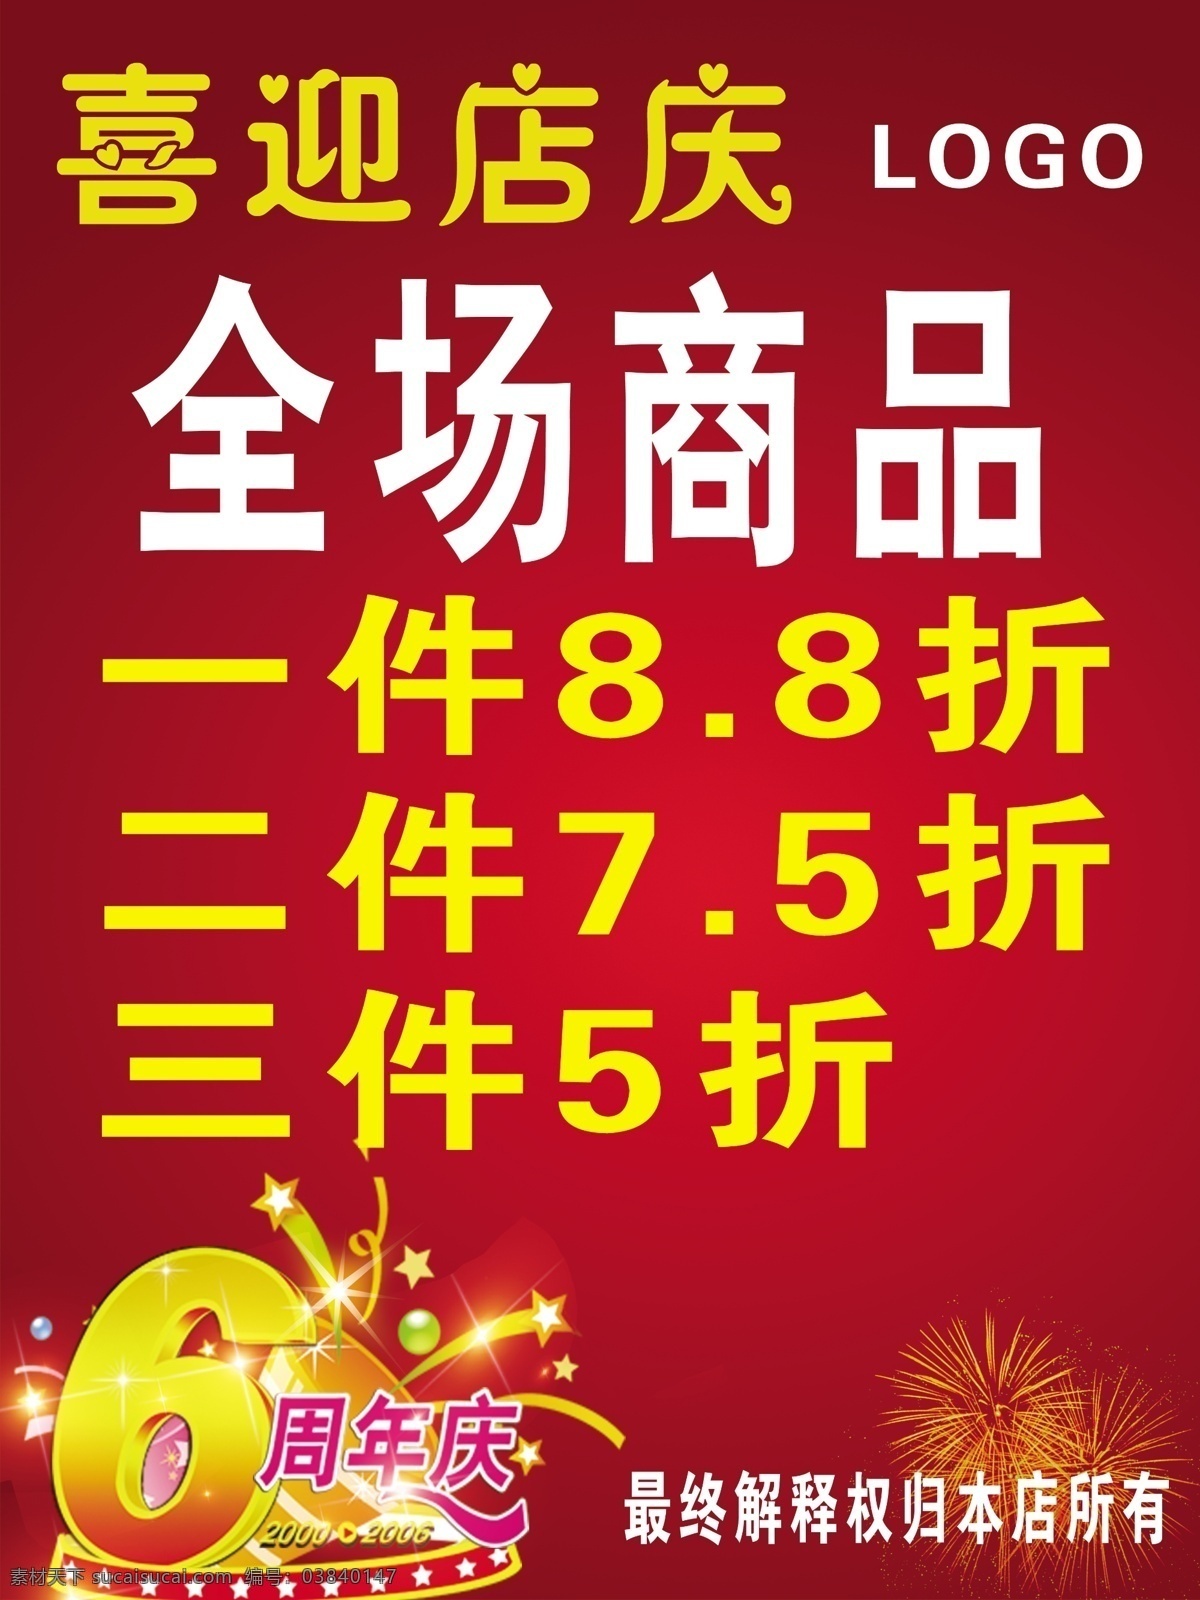 六周年店庆 六周年 店庆海报 星星 其他模版 广告设计模板 源文件